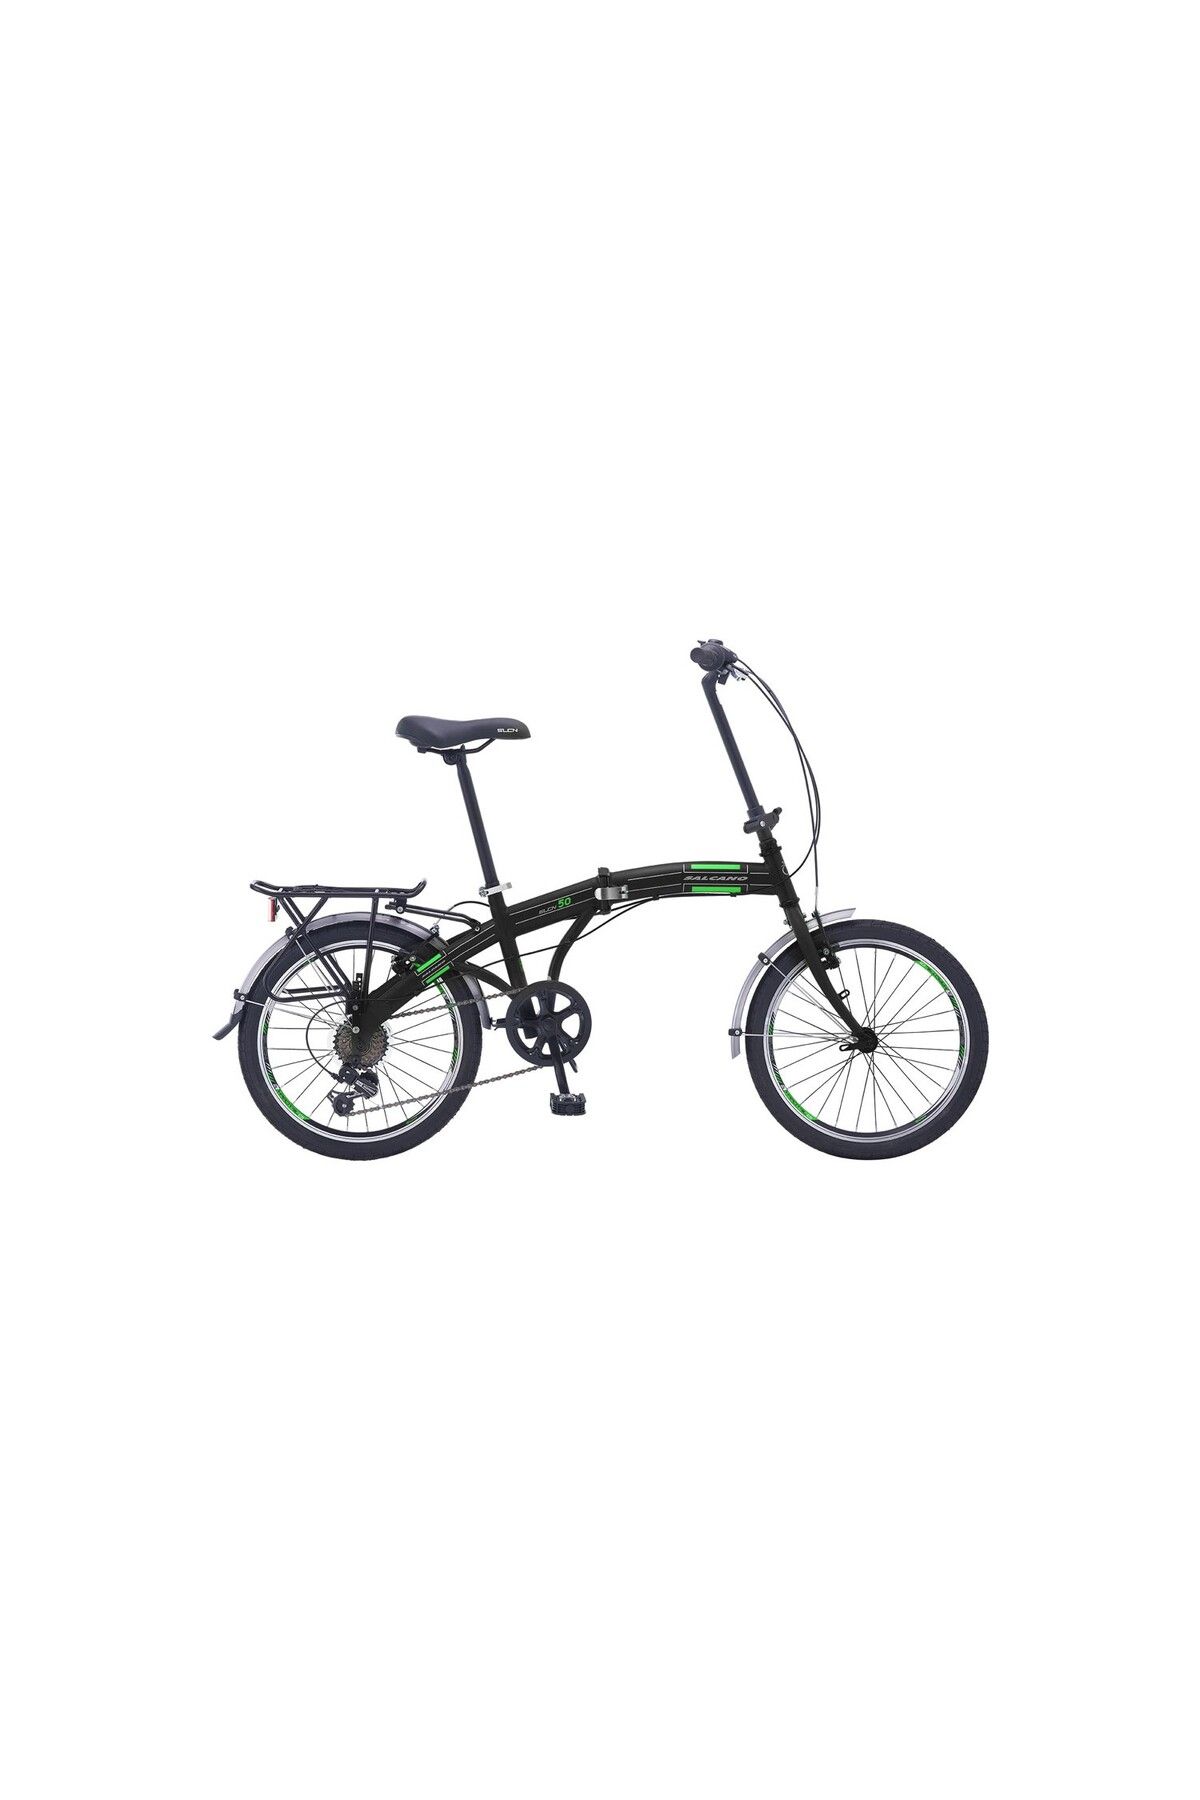 Salcano SLCN 50 Katlanır Bisiklet parlak antrasit kırmızı shimano vitesli siyah yeşil